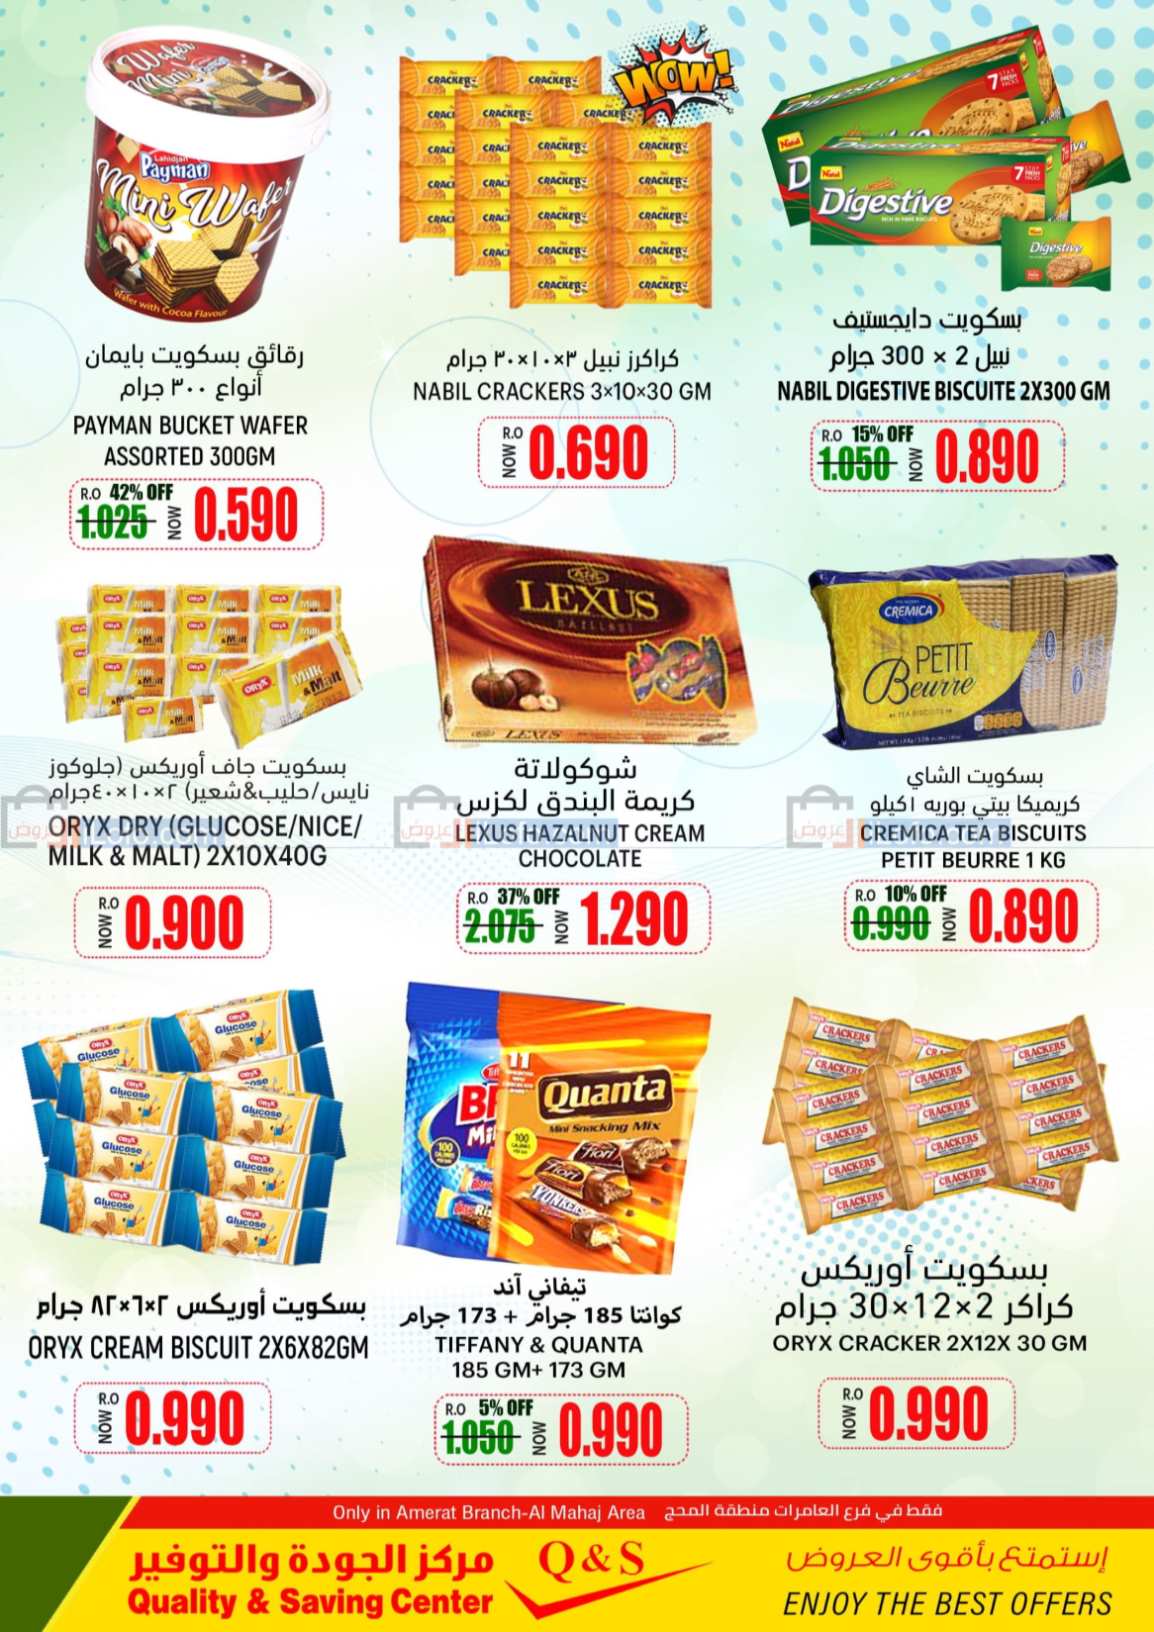 صفحة 8 في التسوق المذهل في مركز الجودة والتوفير عمان